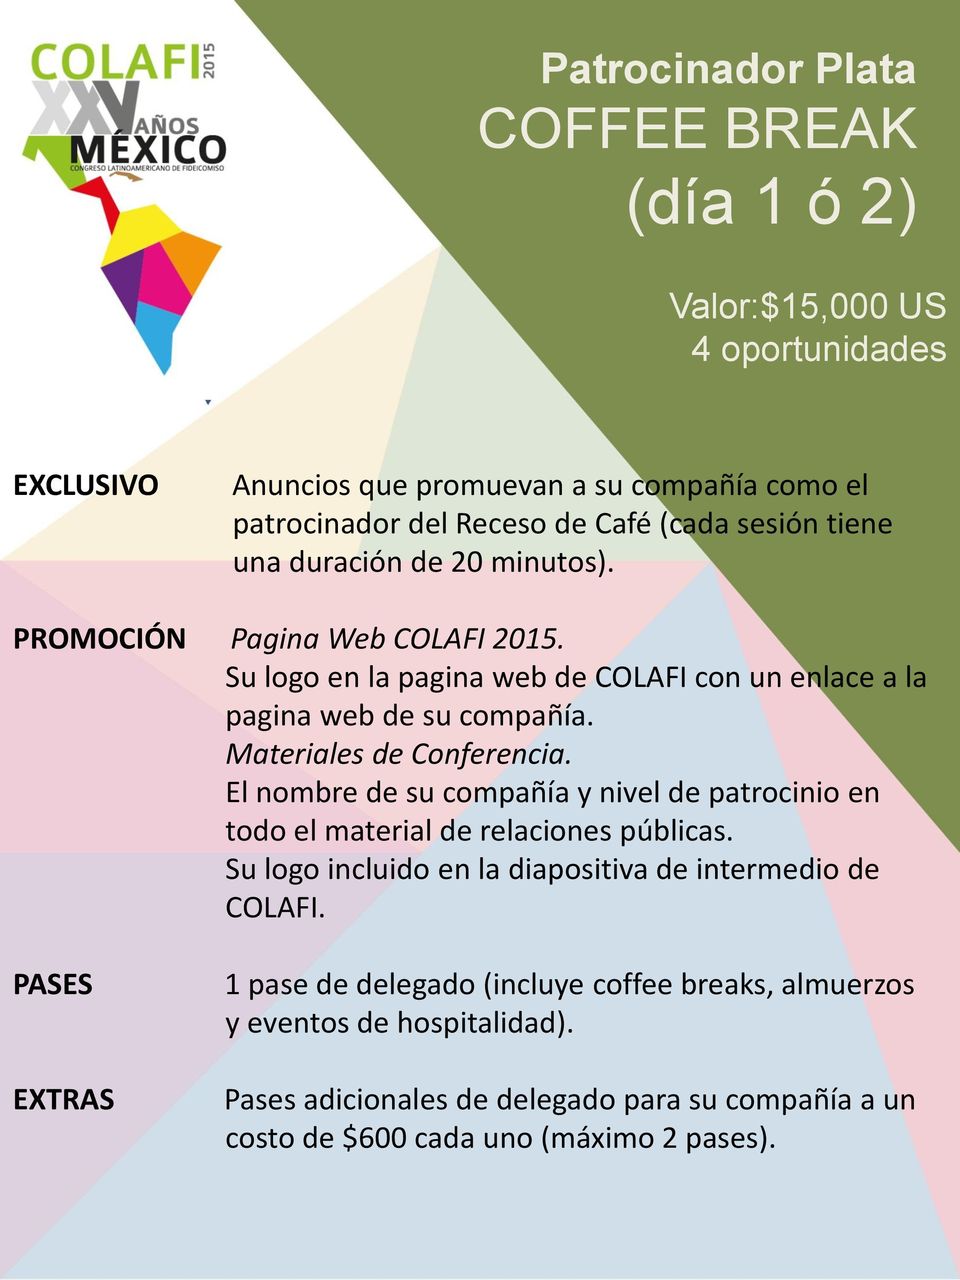 PROMOCIÓN Pagina Web COLAFI 2015. pagina web de su compañía.